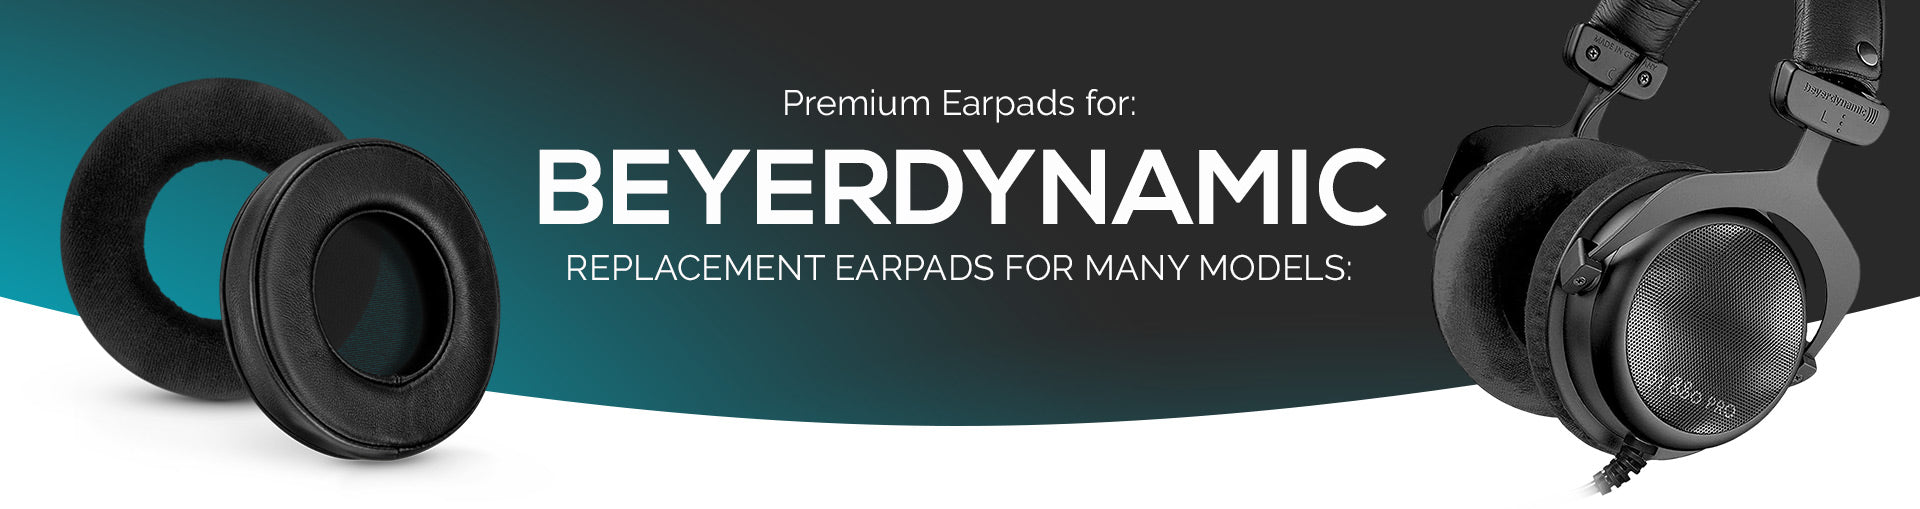 Earpads for Beyerdynamic Headphones